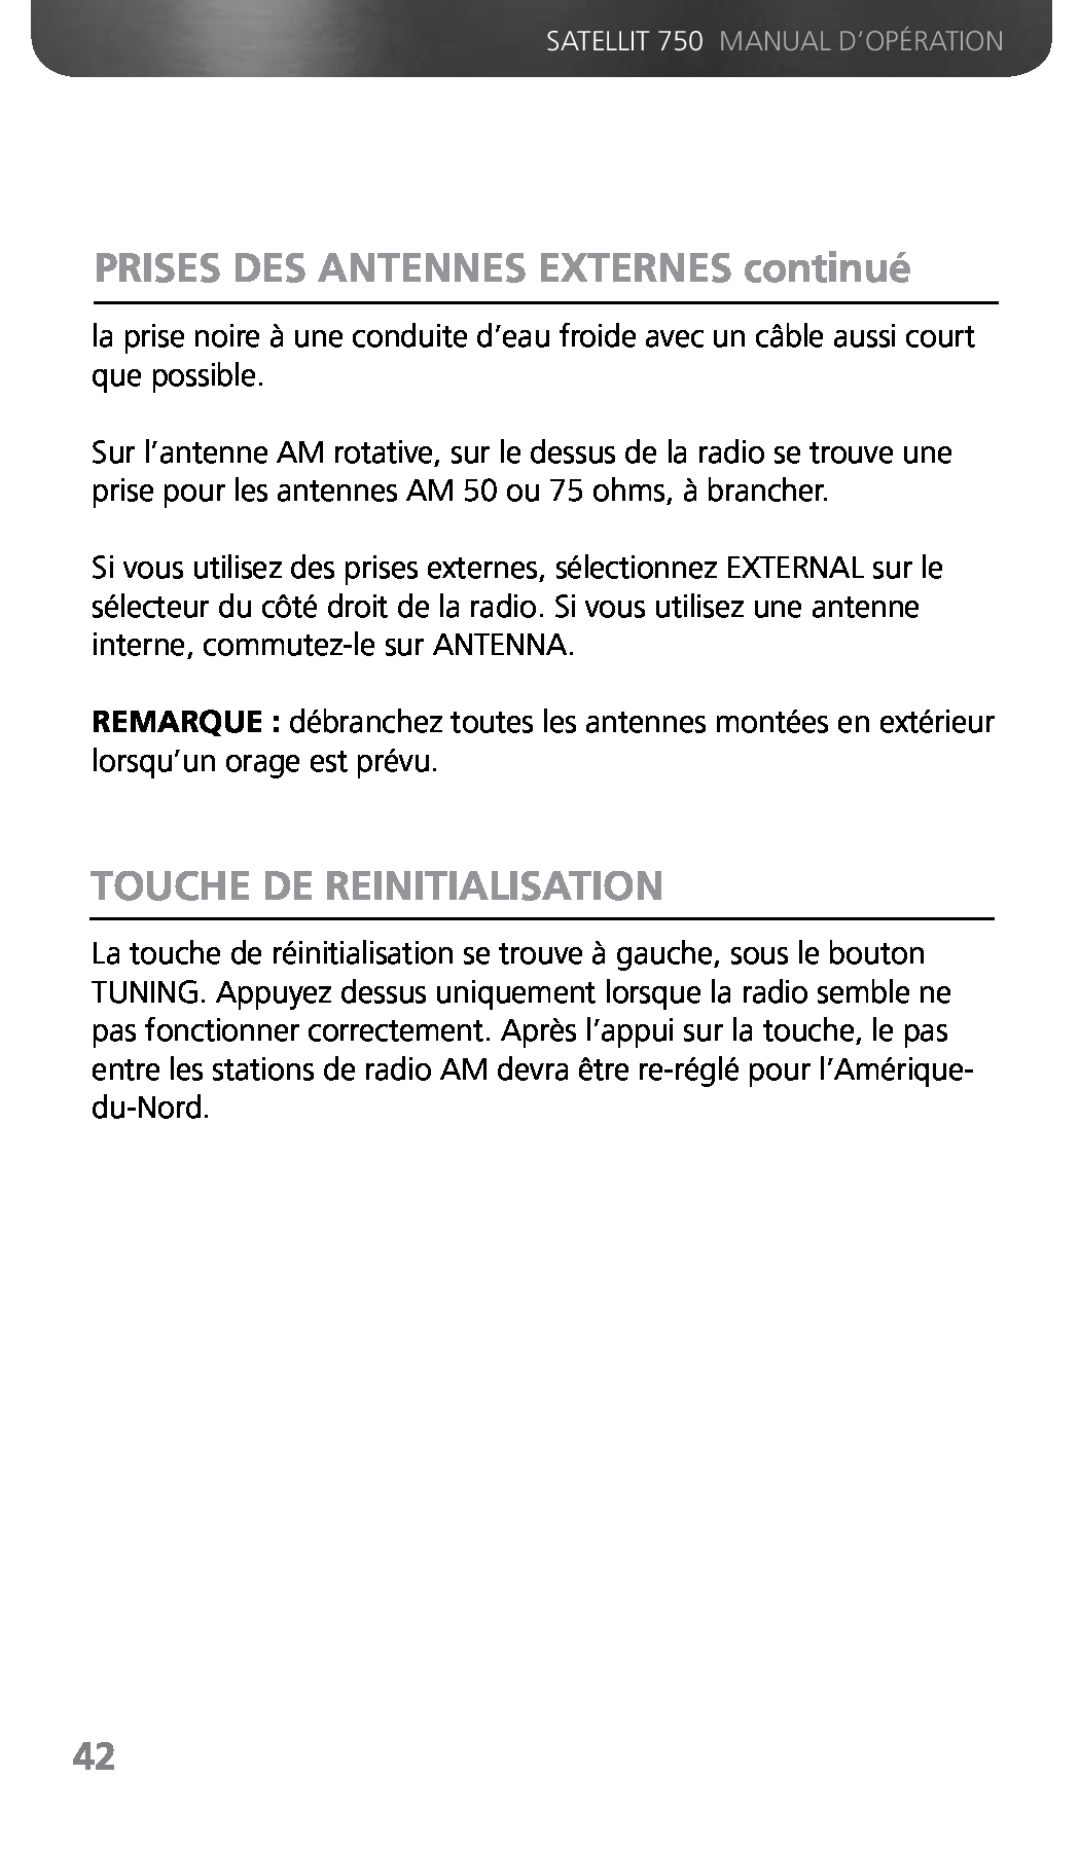 Grundig 750 owner manual PRISES DES ANTENNES EXTERNES continué, Touche De Reinitialisation 